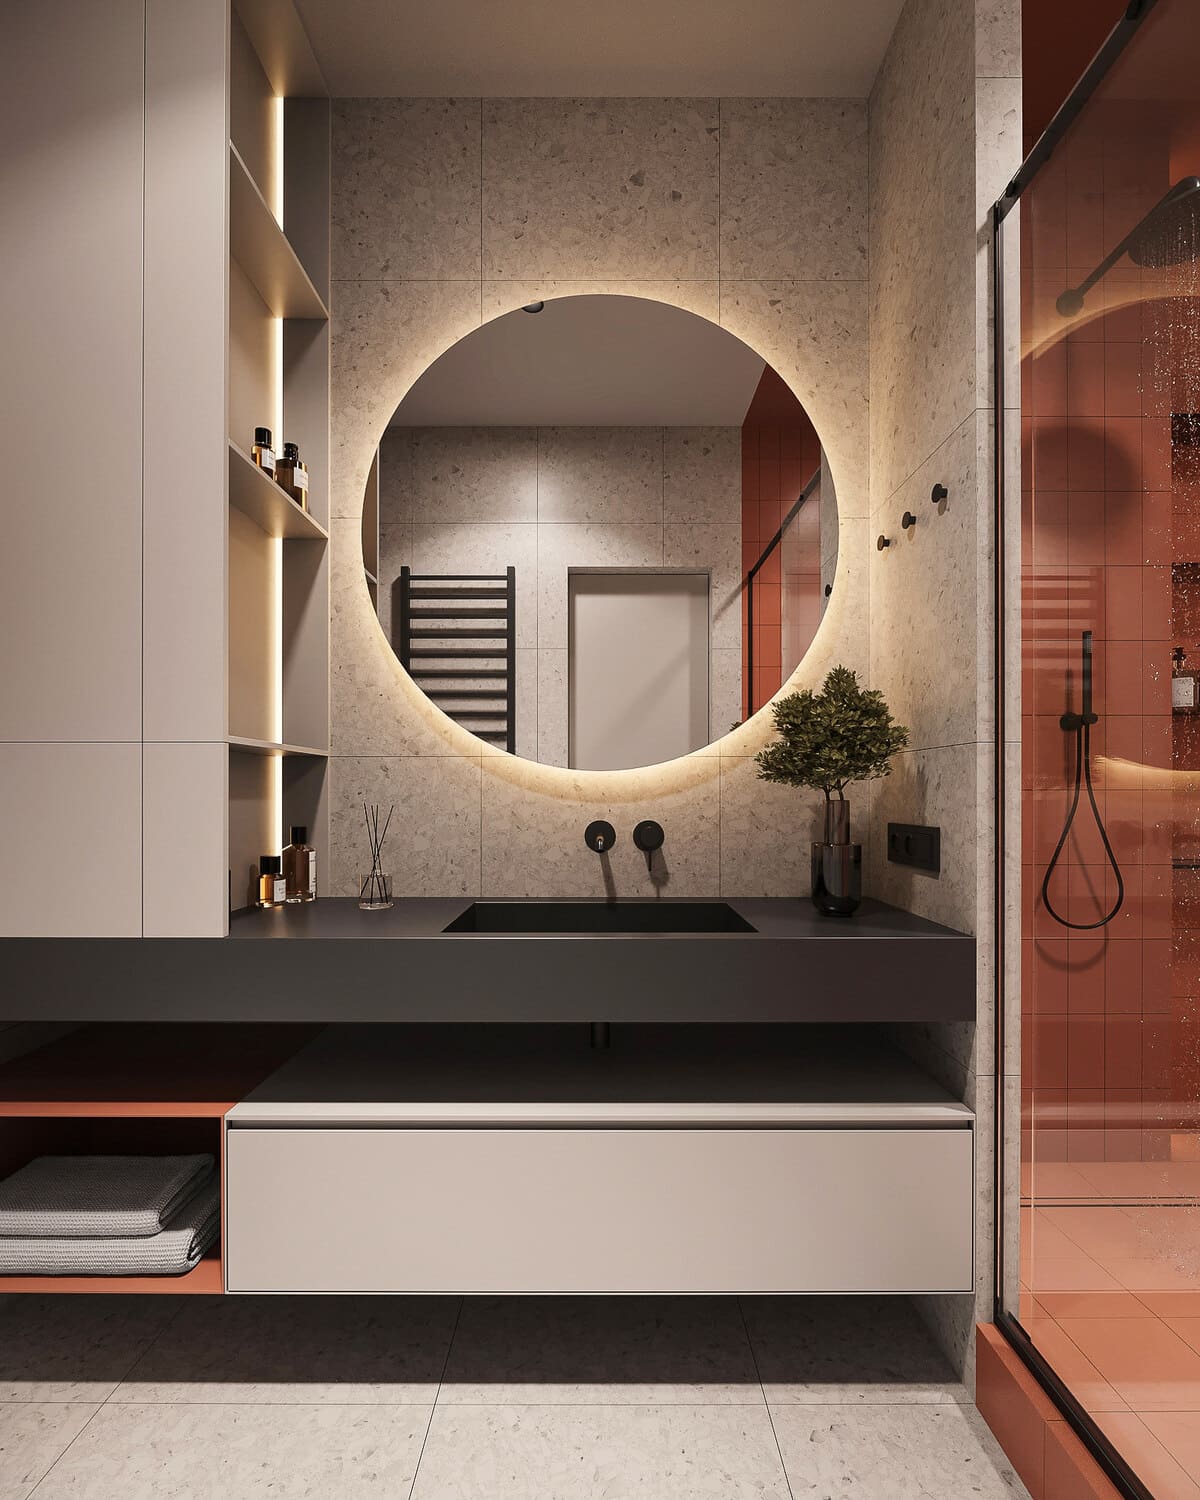 Минималистичная квартира с контрастными акцентами в стиле минимализма, ванная, фото 11